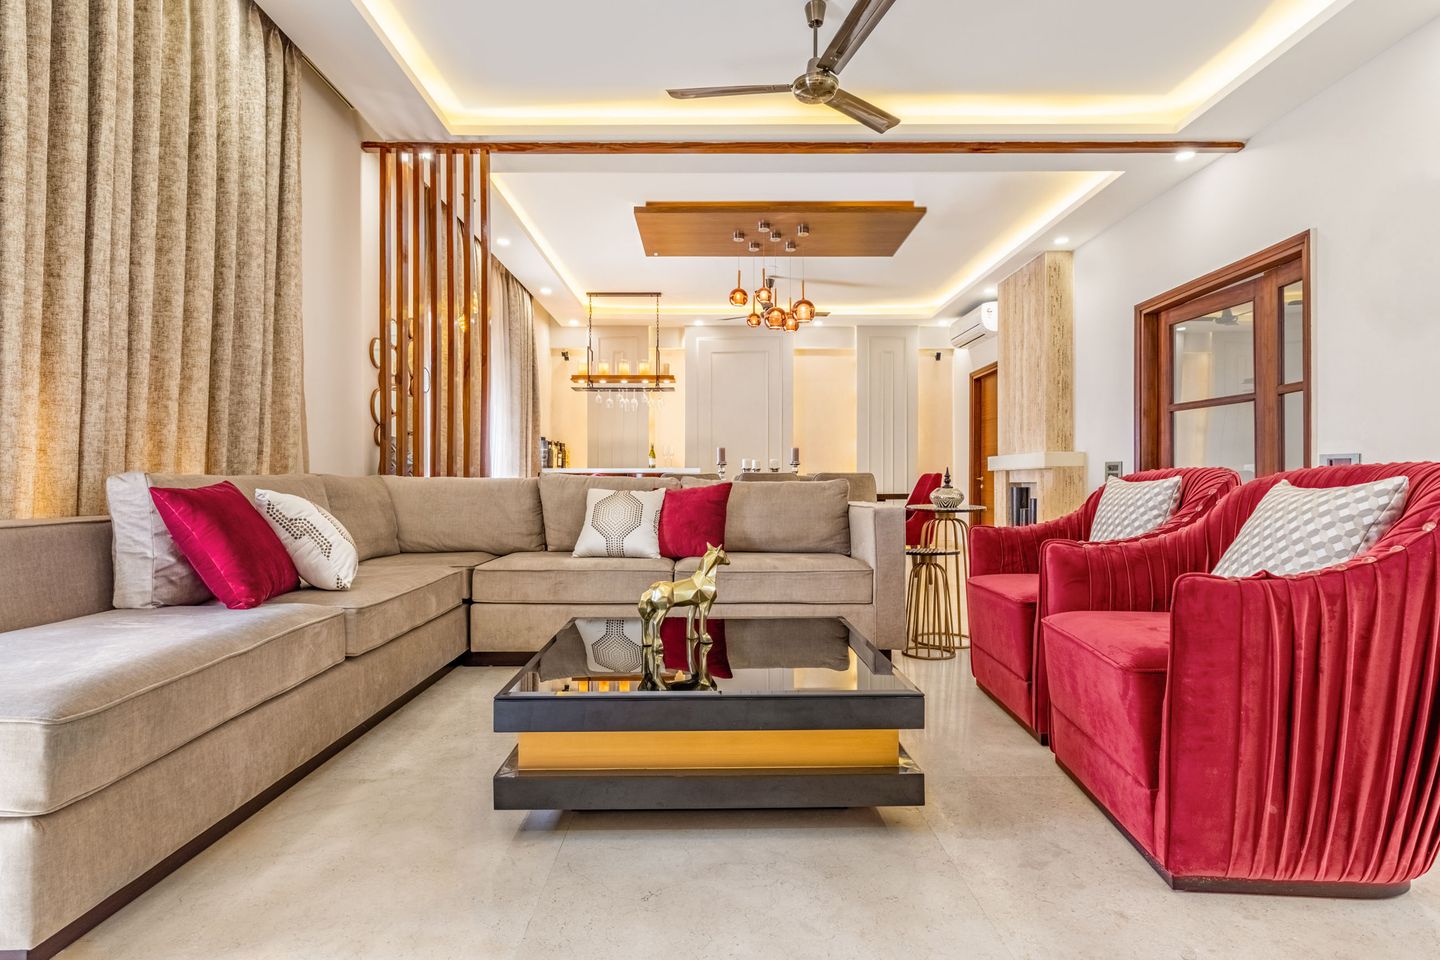 Contemporary 4-BHK Villa In Noida